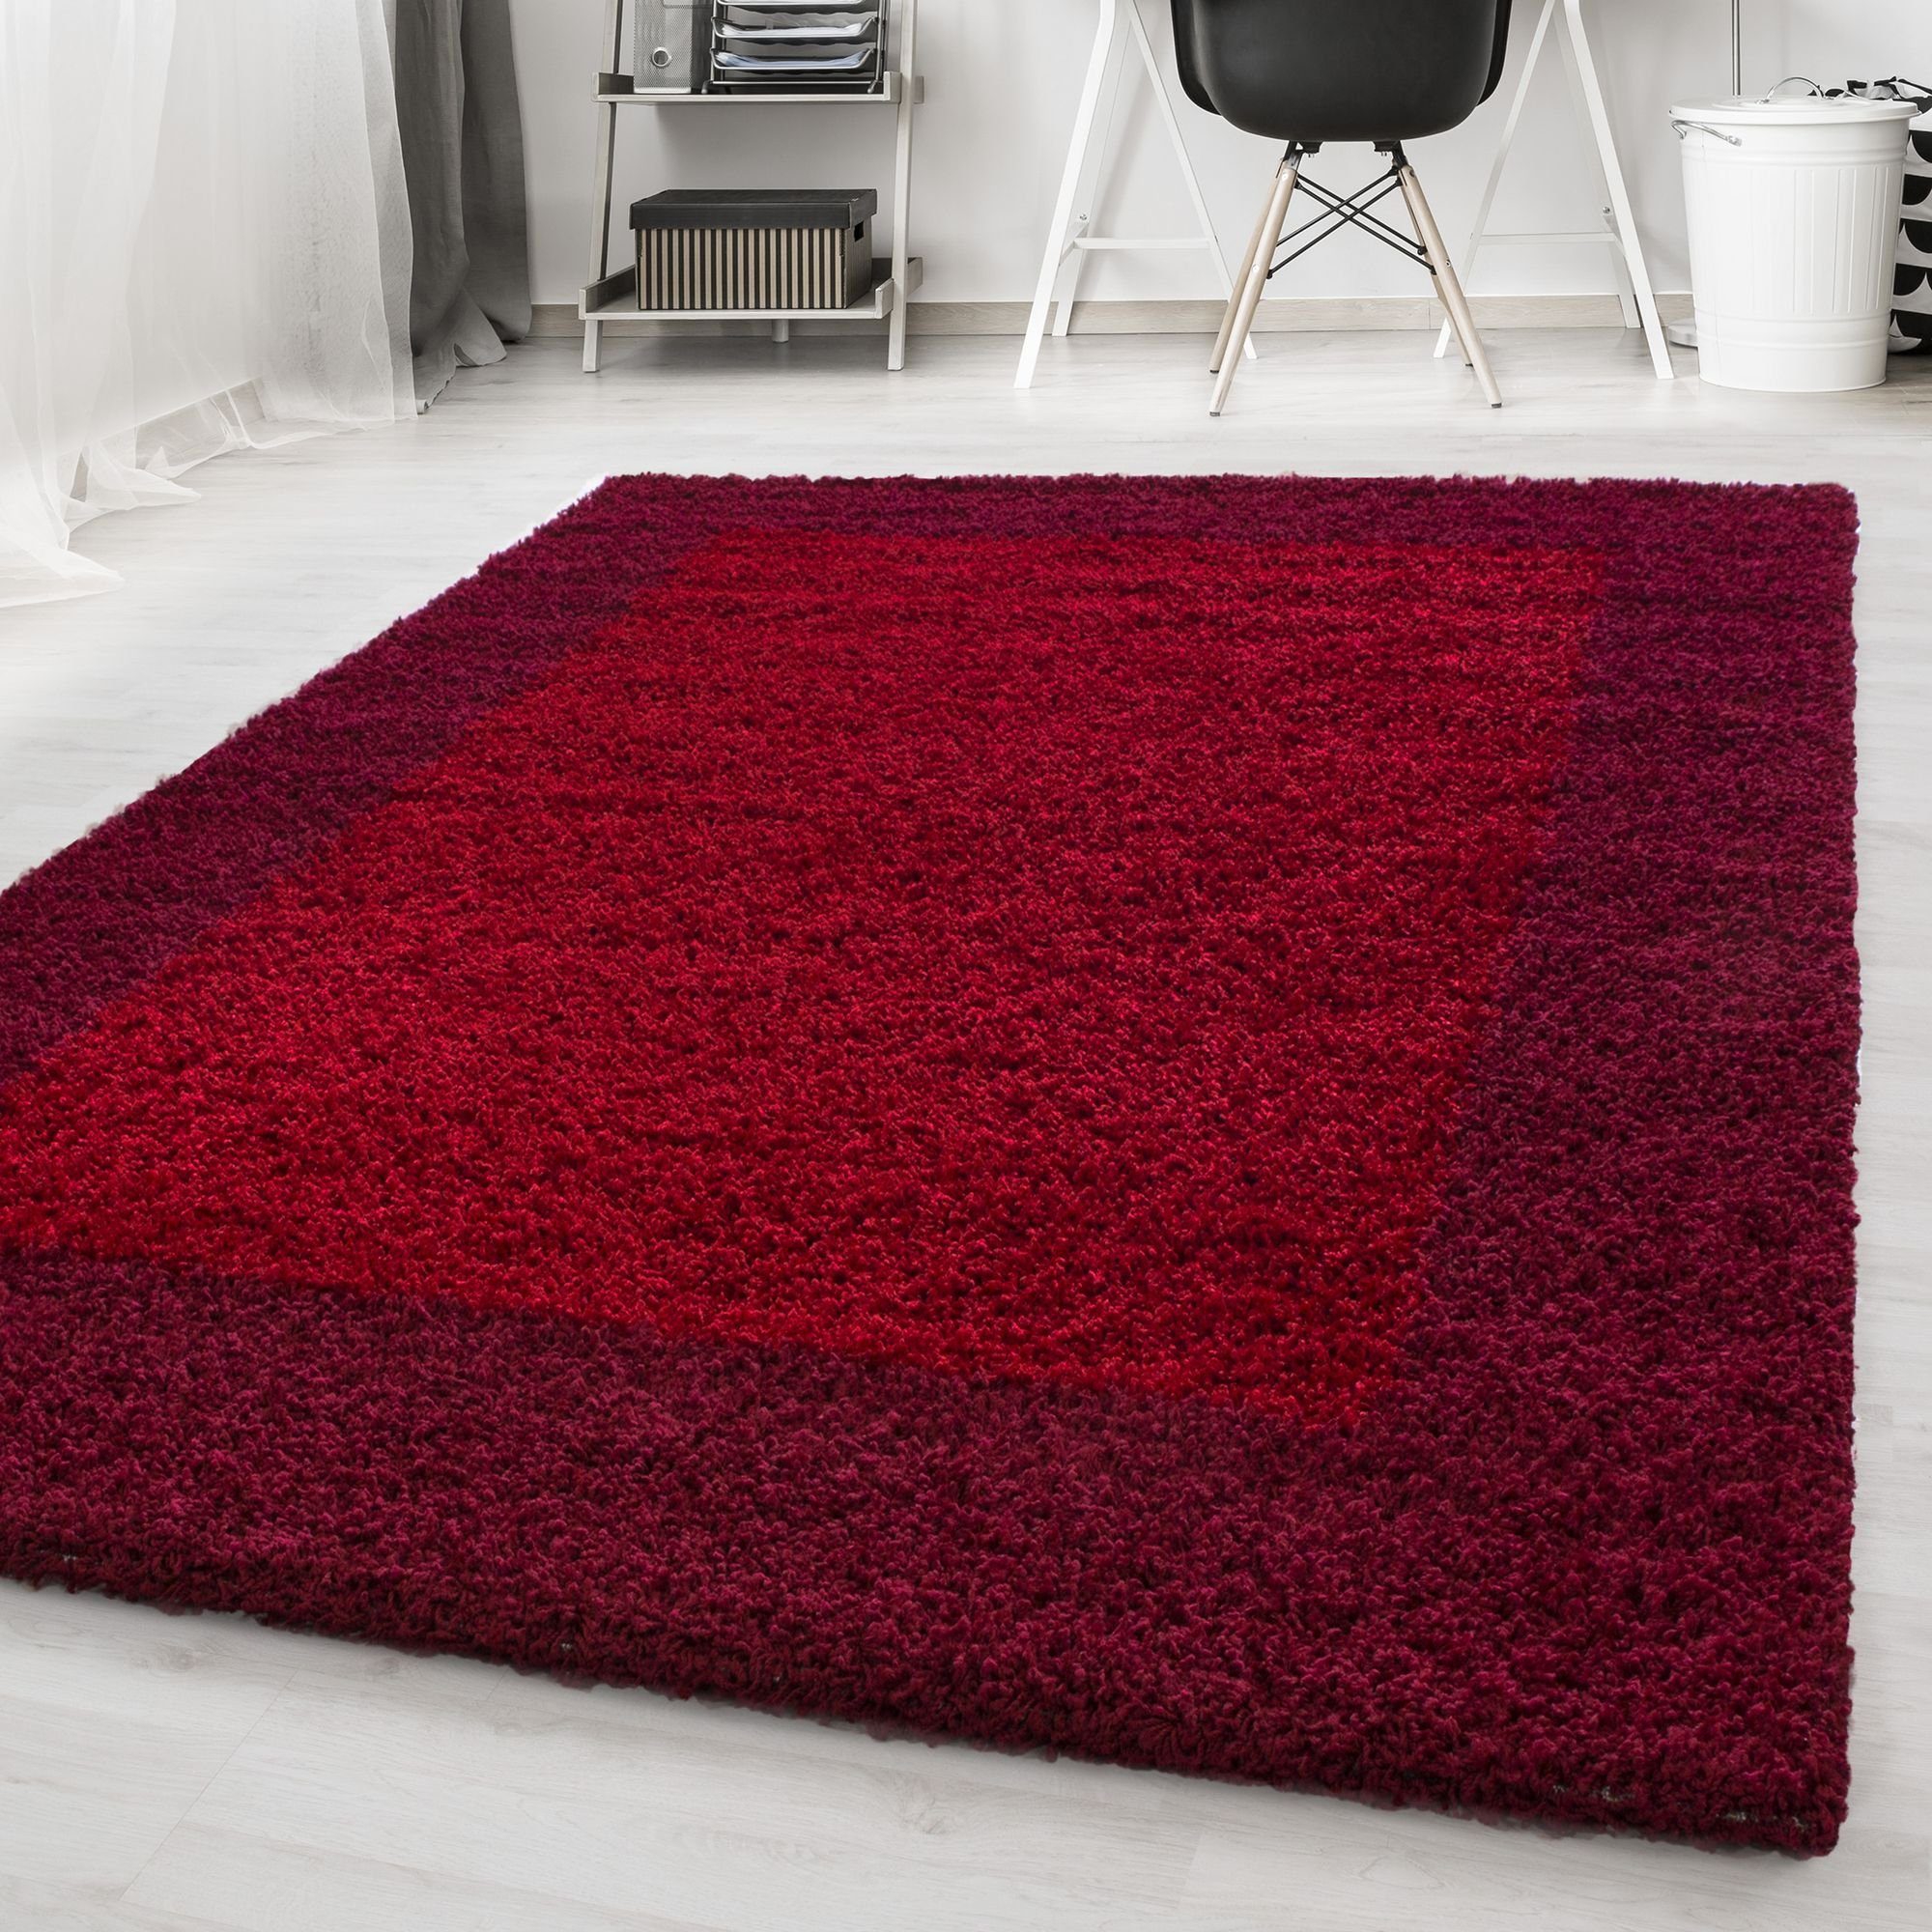 Hochflor-Teppich Bordüre Design, Carpetsale24, Läufer, Höhe: 30 mm, Teppich Wohnzimmer Bordüre Design Shaggy versch. farben und größen Rot